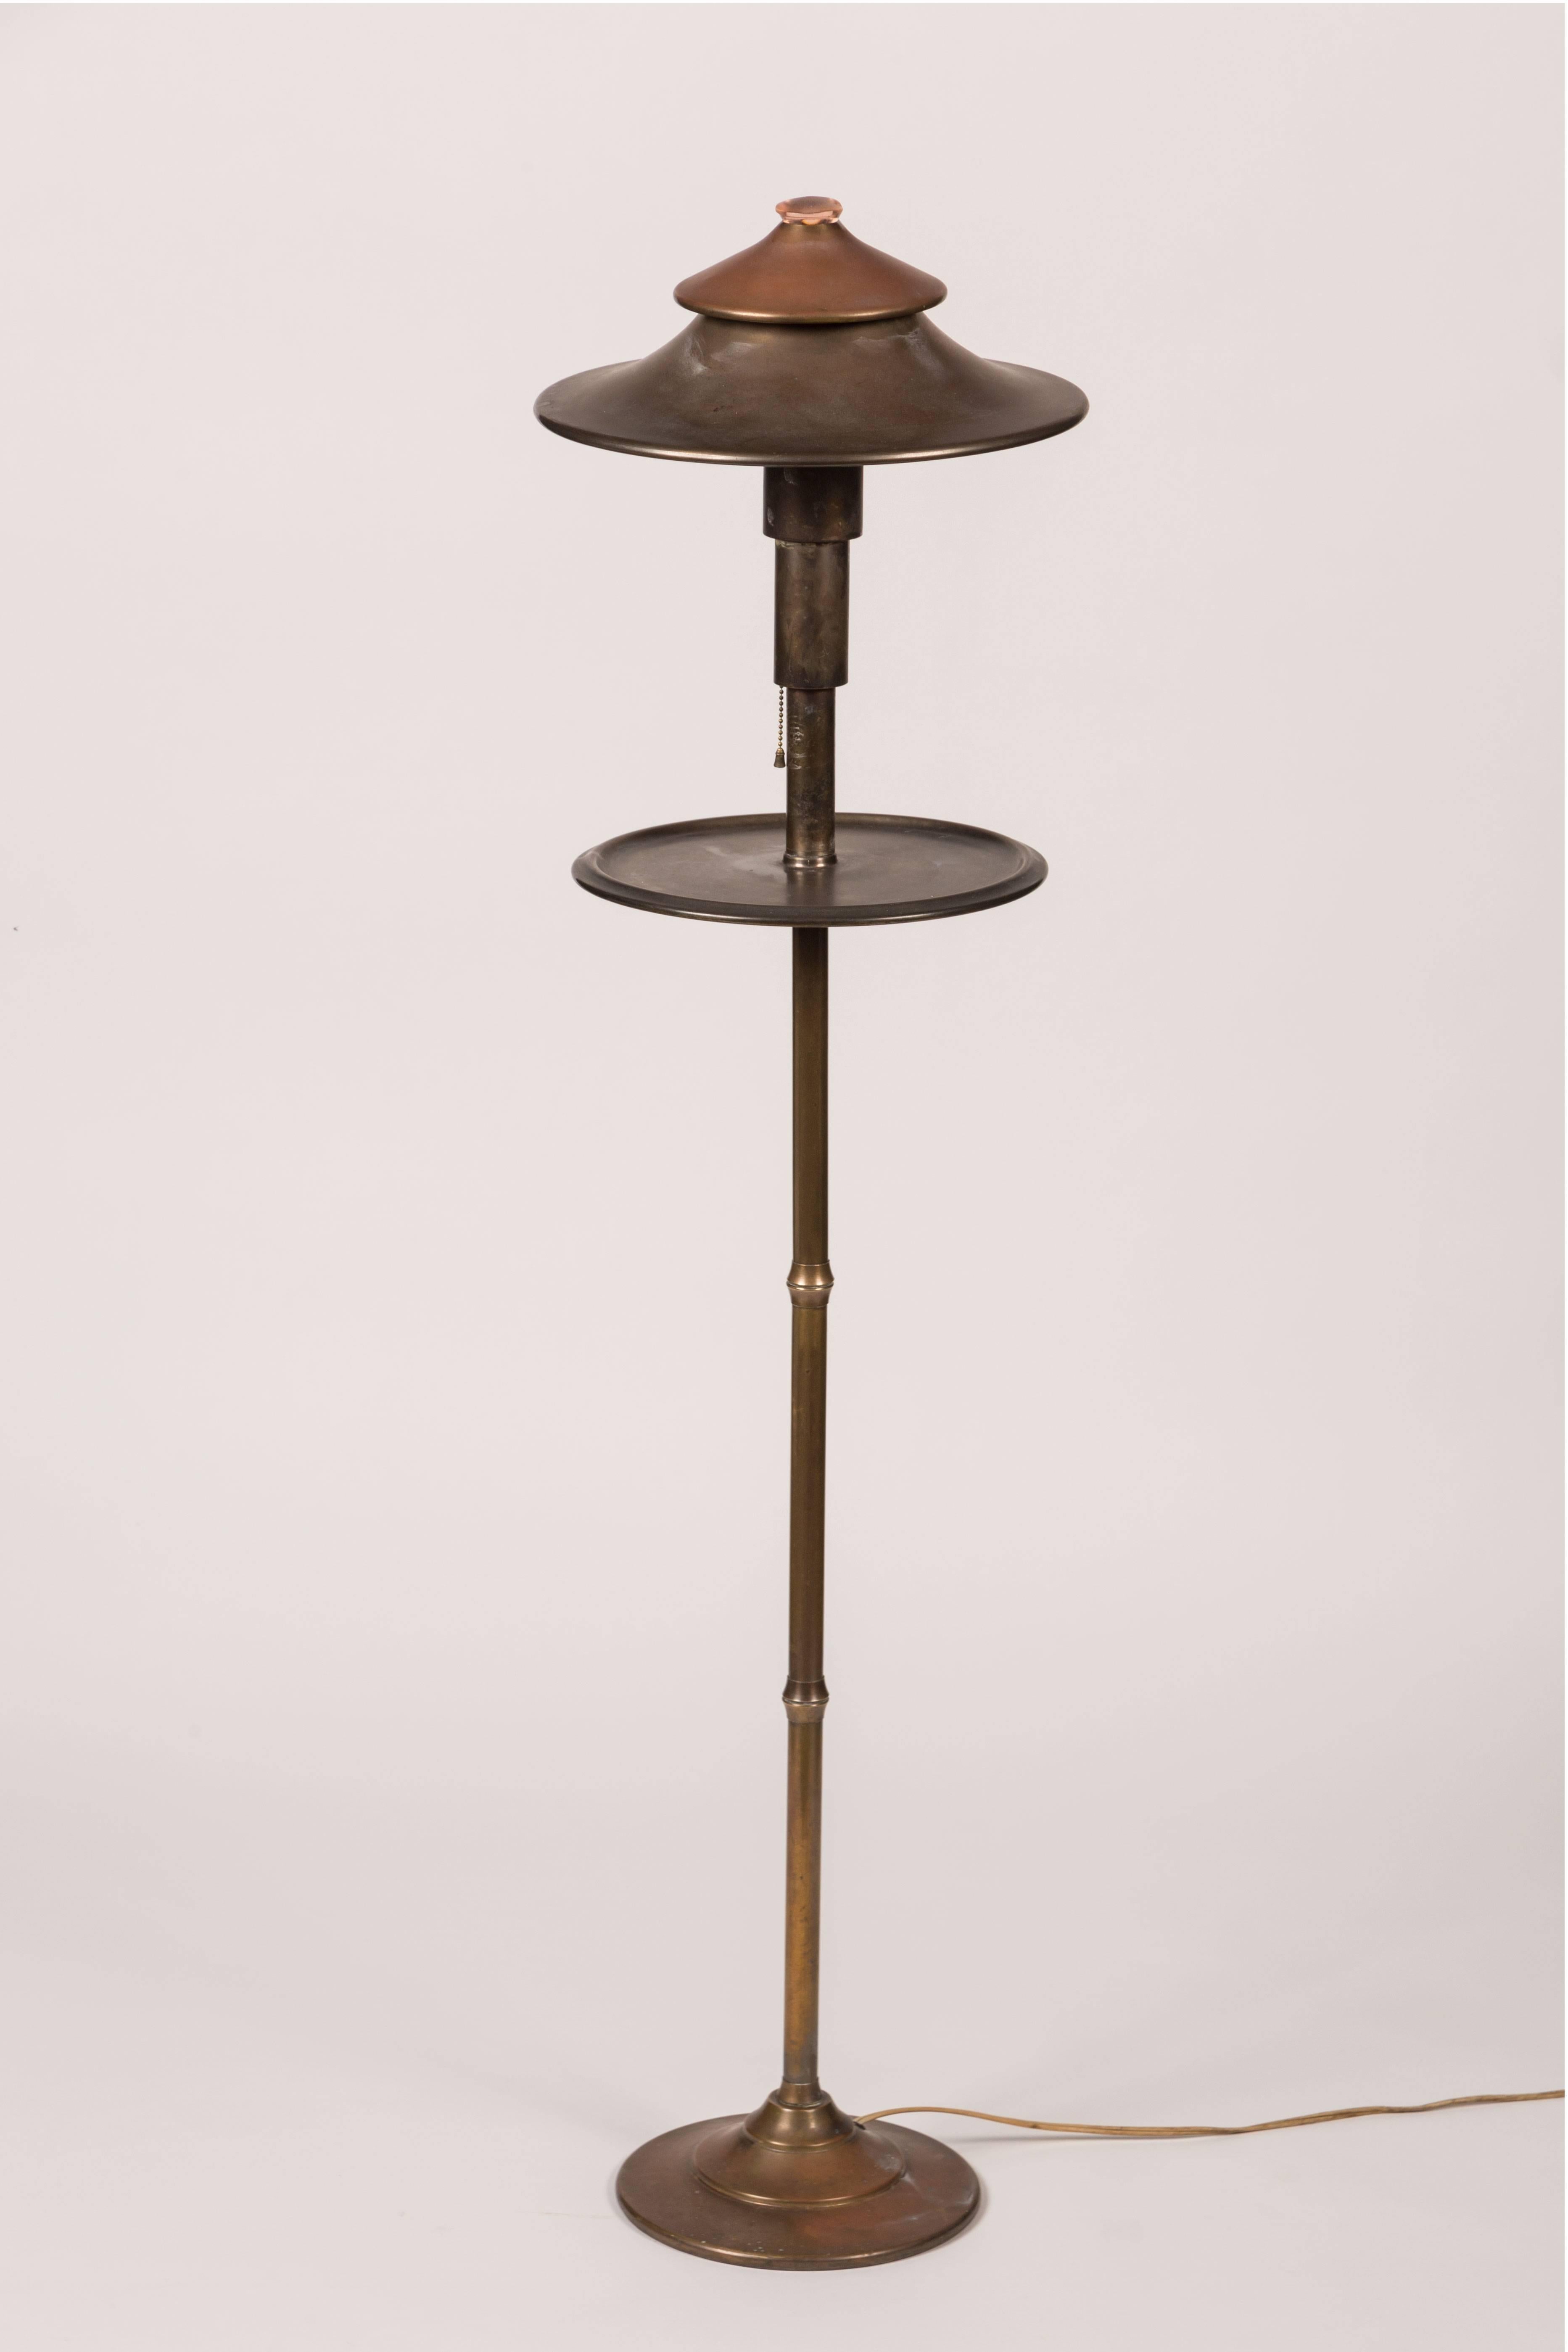 American Rare Floor Lamp by KEM Weber for Miller